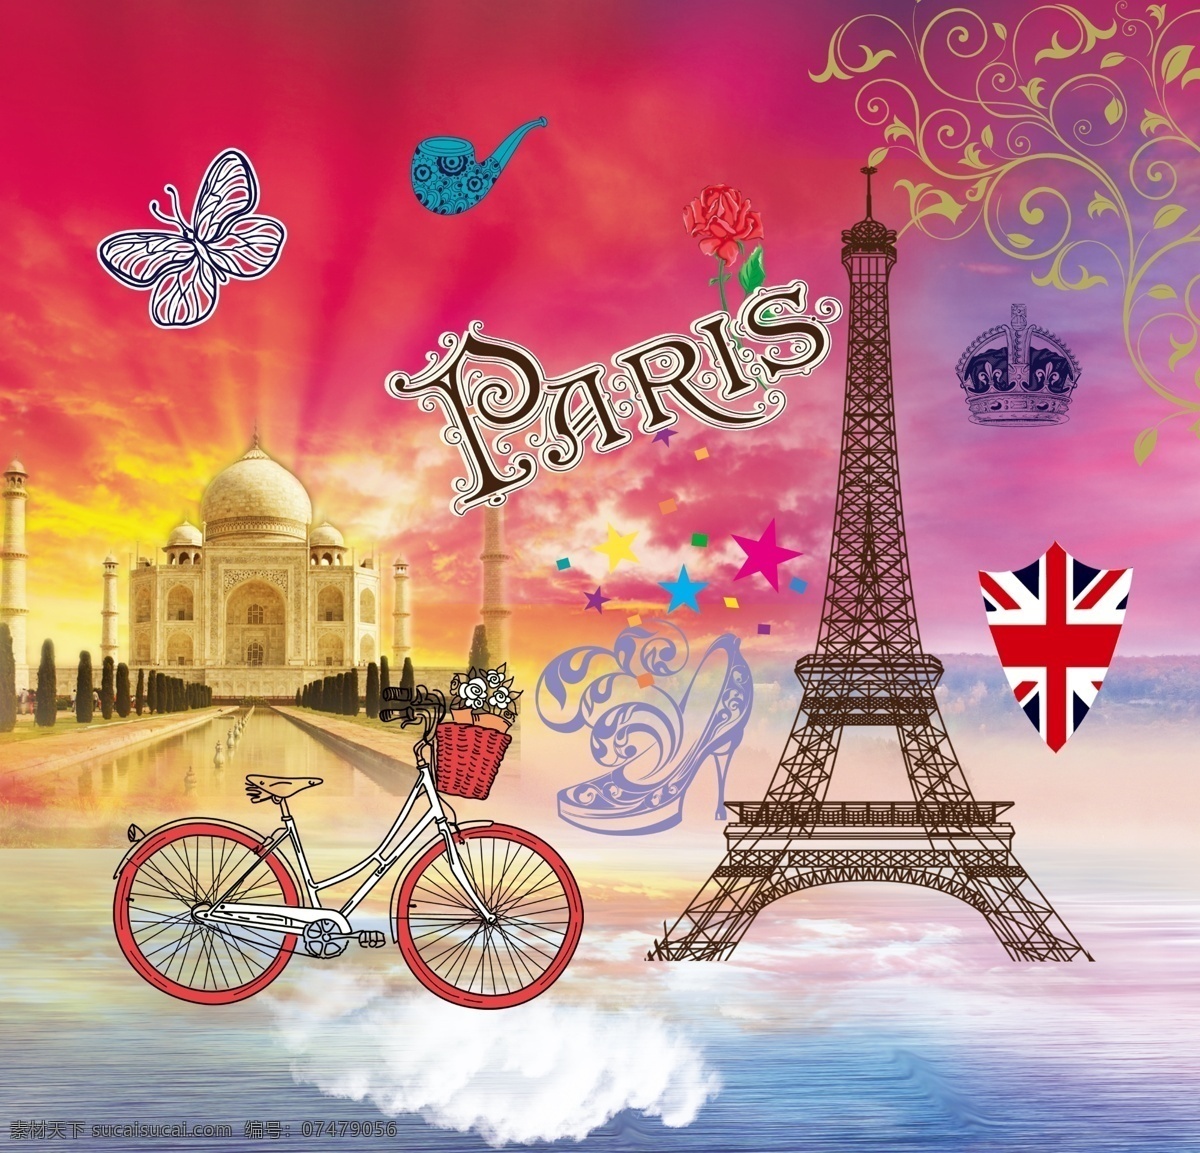 欧美 风格 高清 欧美风格 欧美风情 欧美复古 艾菲尔铁塔 铁塔 巴黎铁塔 自行车 树叶 皇冠 分层 文化艺术 传统文化